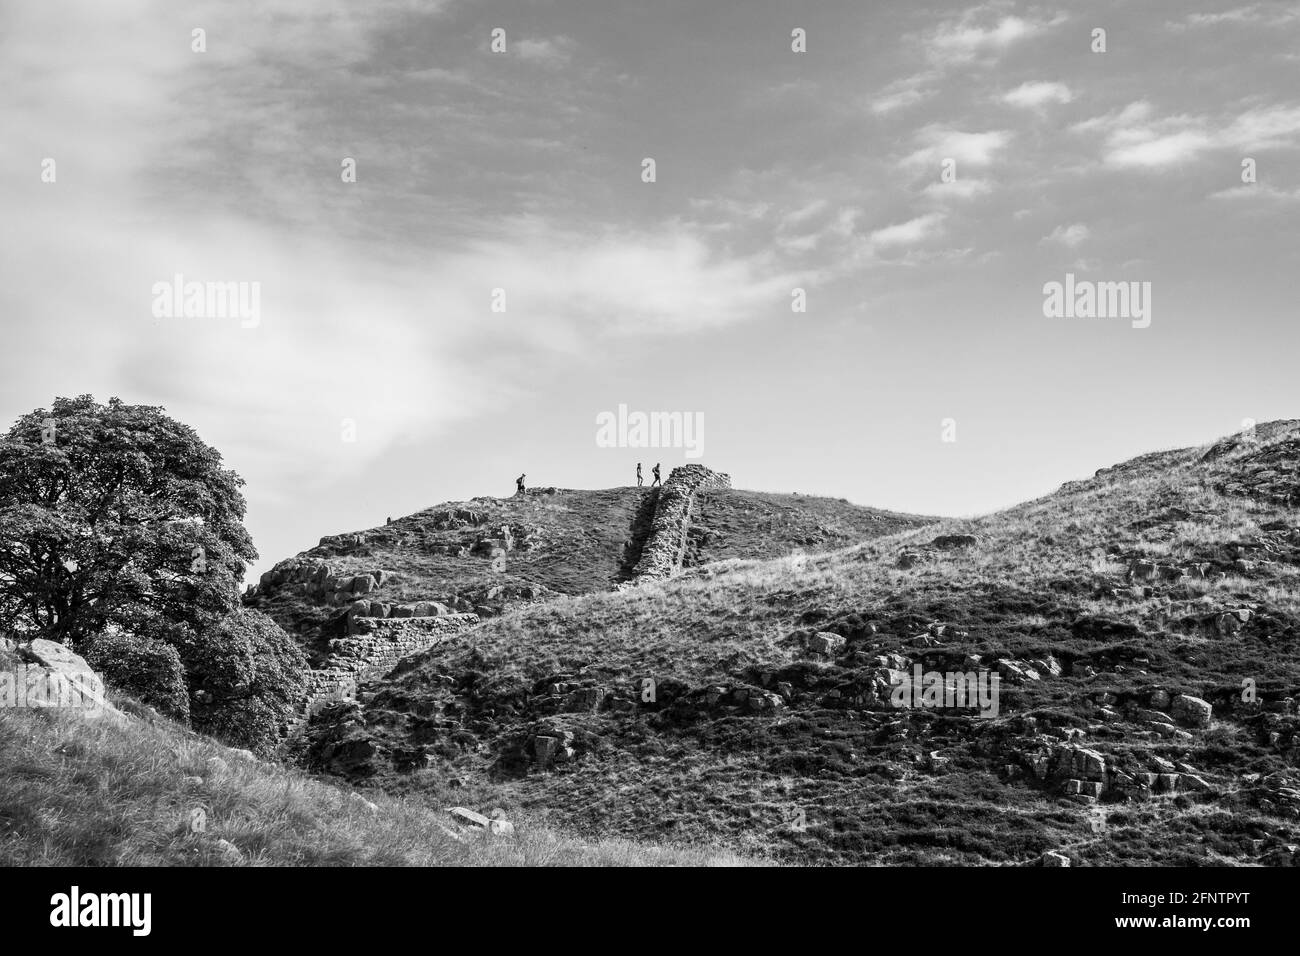 Northumberland Reino Unido: Muro de Adriano construido sobre altos acantilados (Muro Romano) en un soleado día de verano en la campiña inglesa Foto de stock